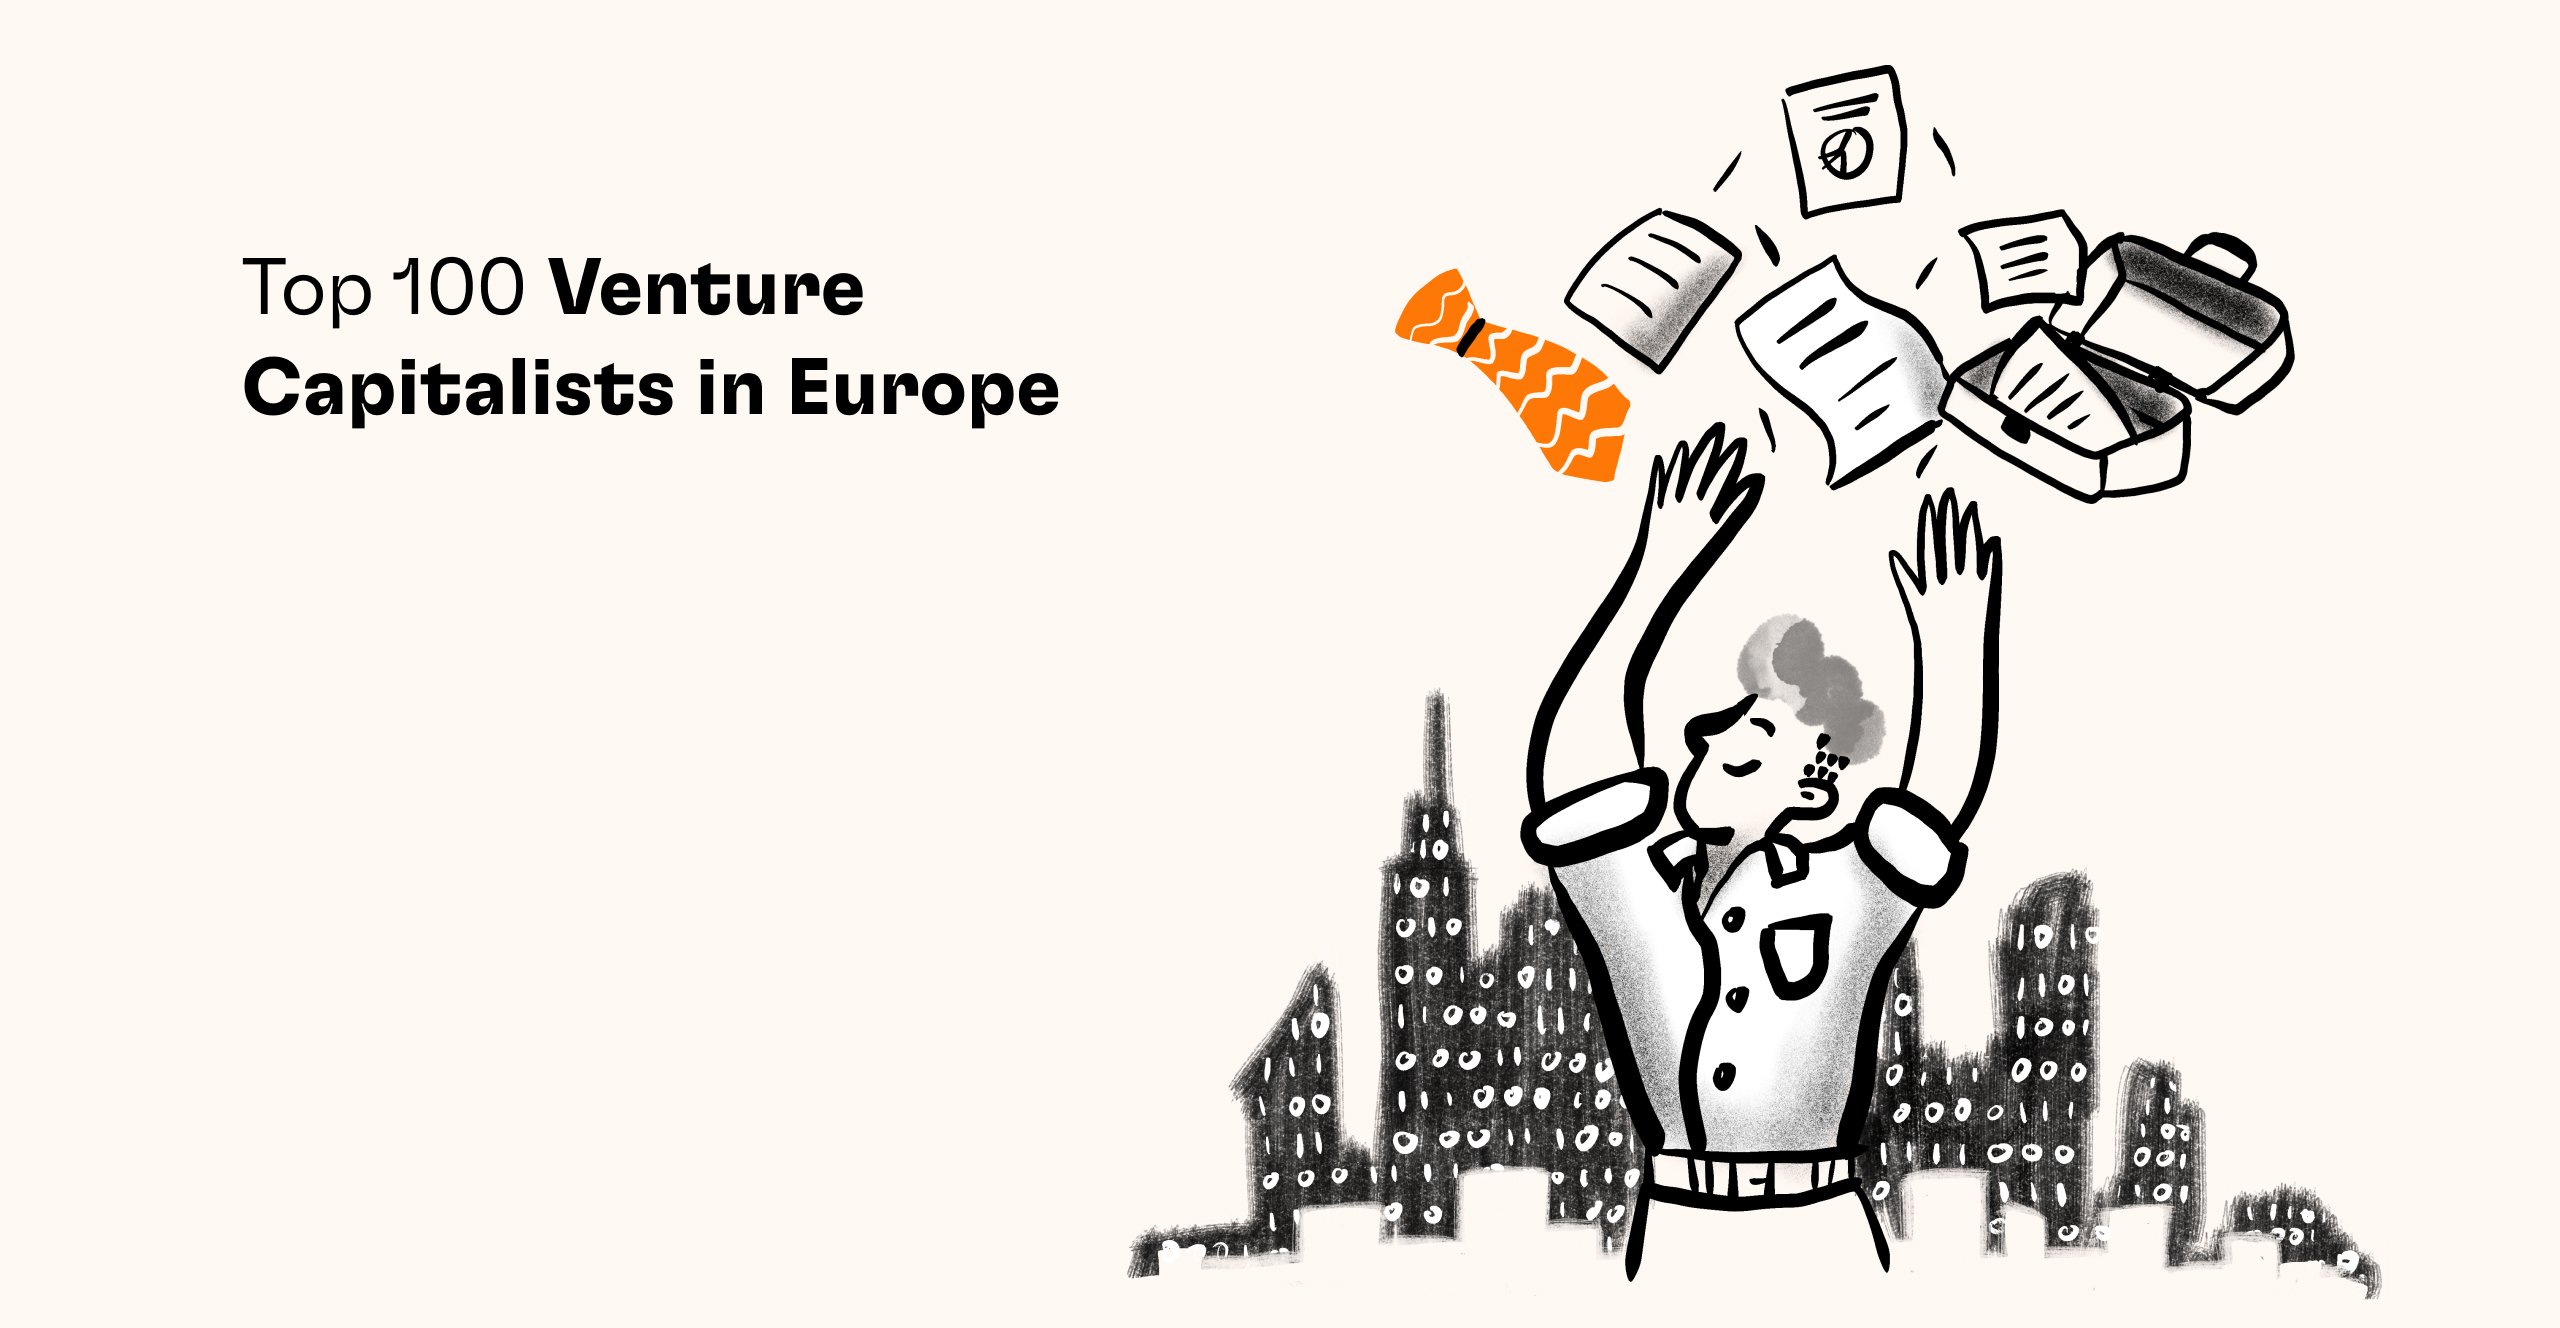 Top 100 Venture Capitalists in Europe